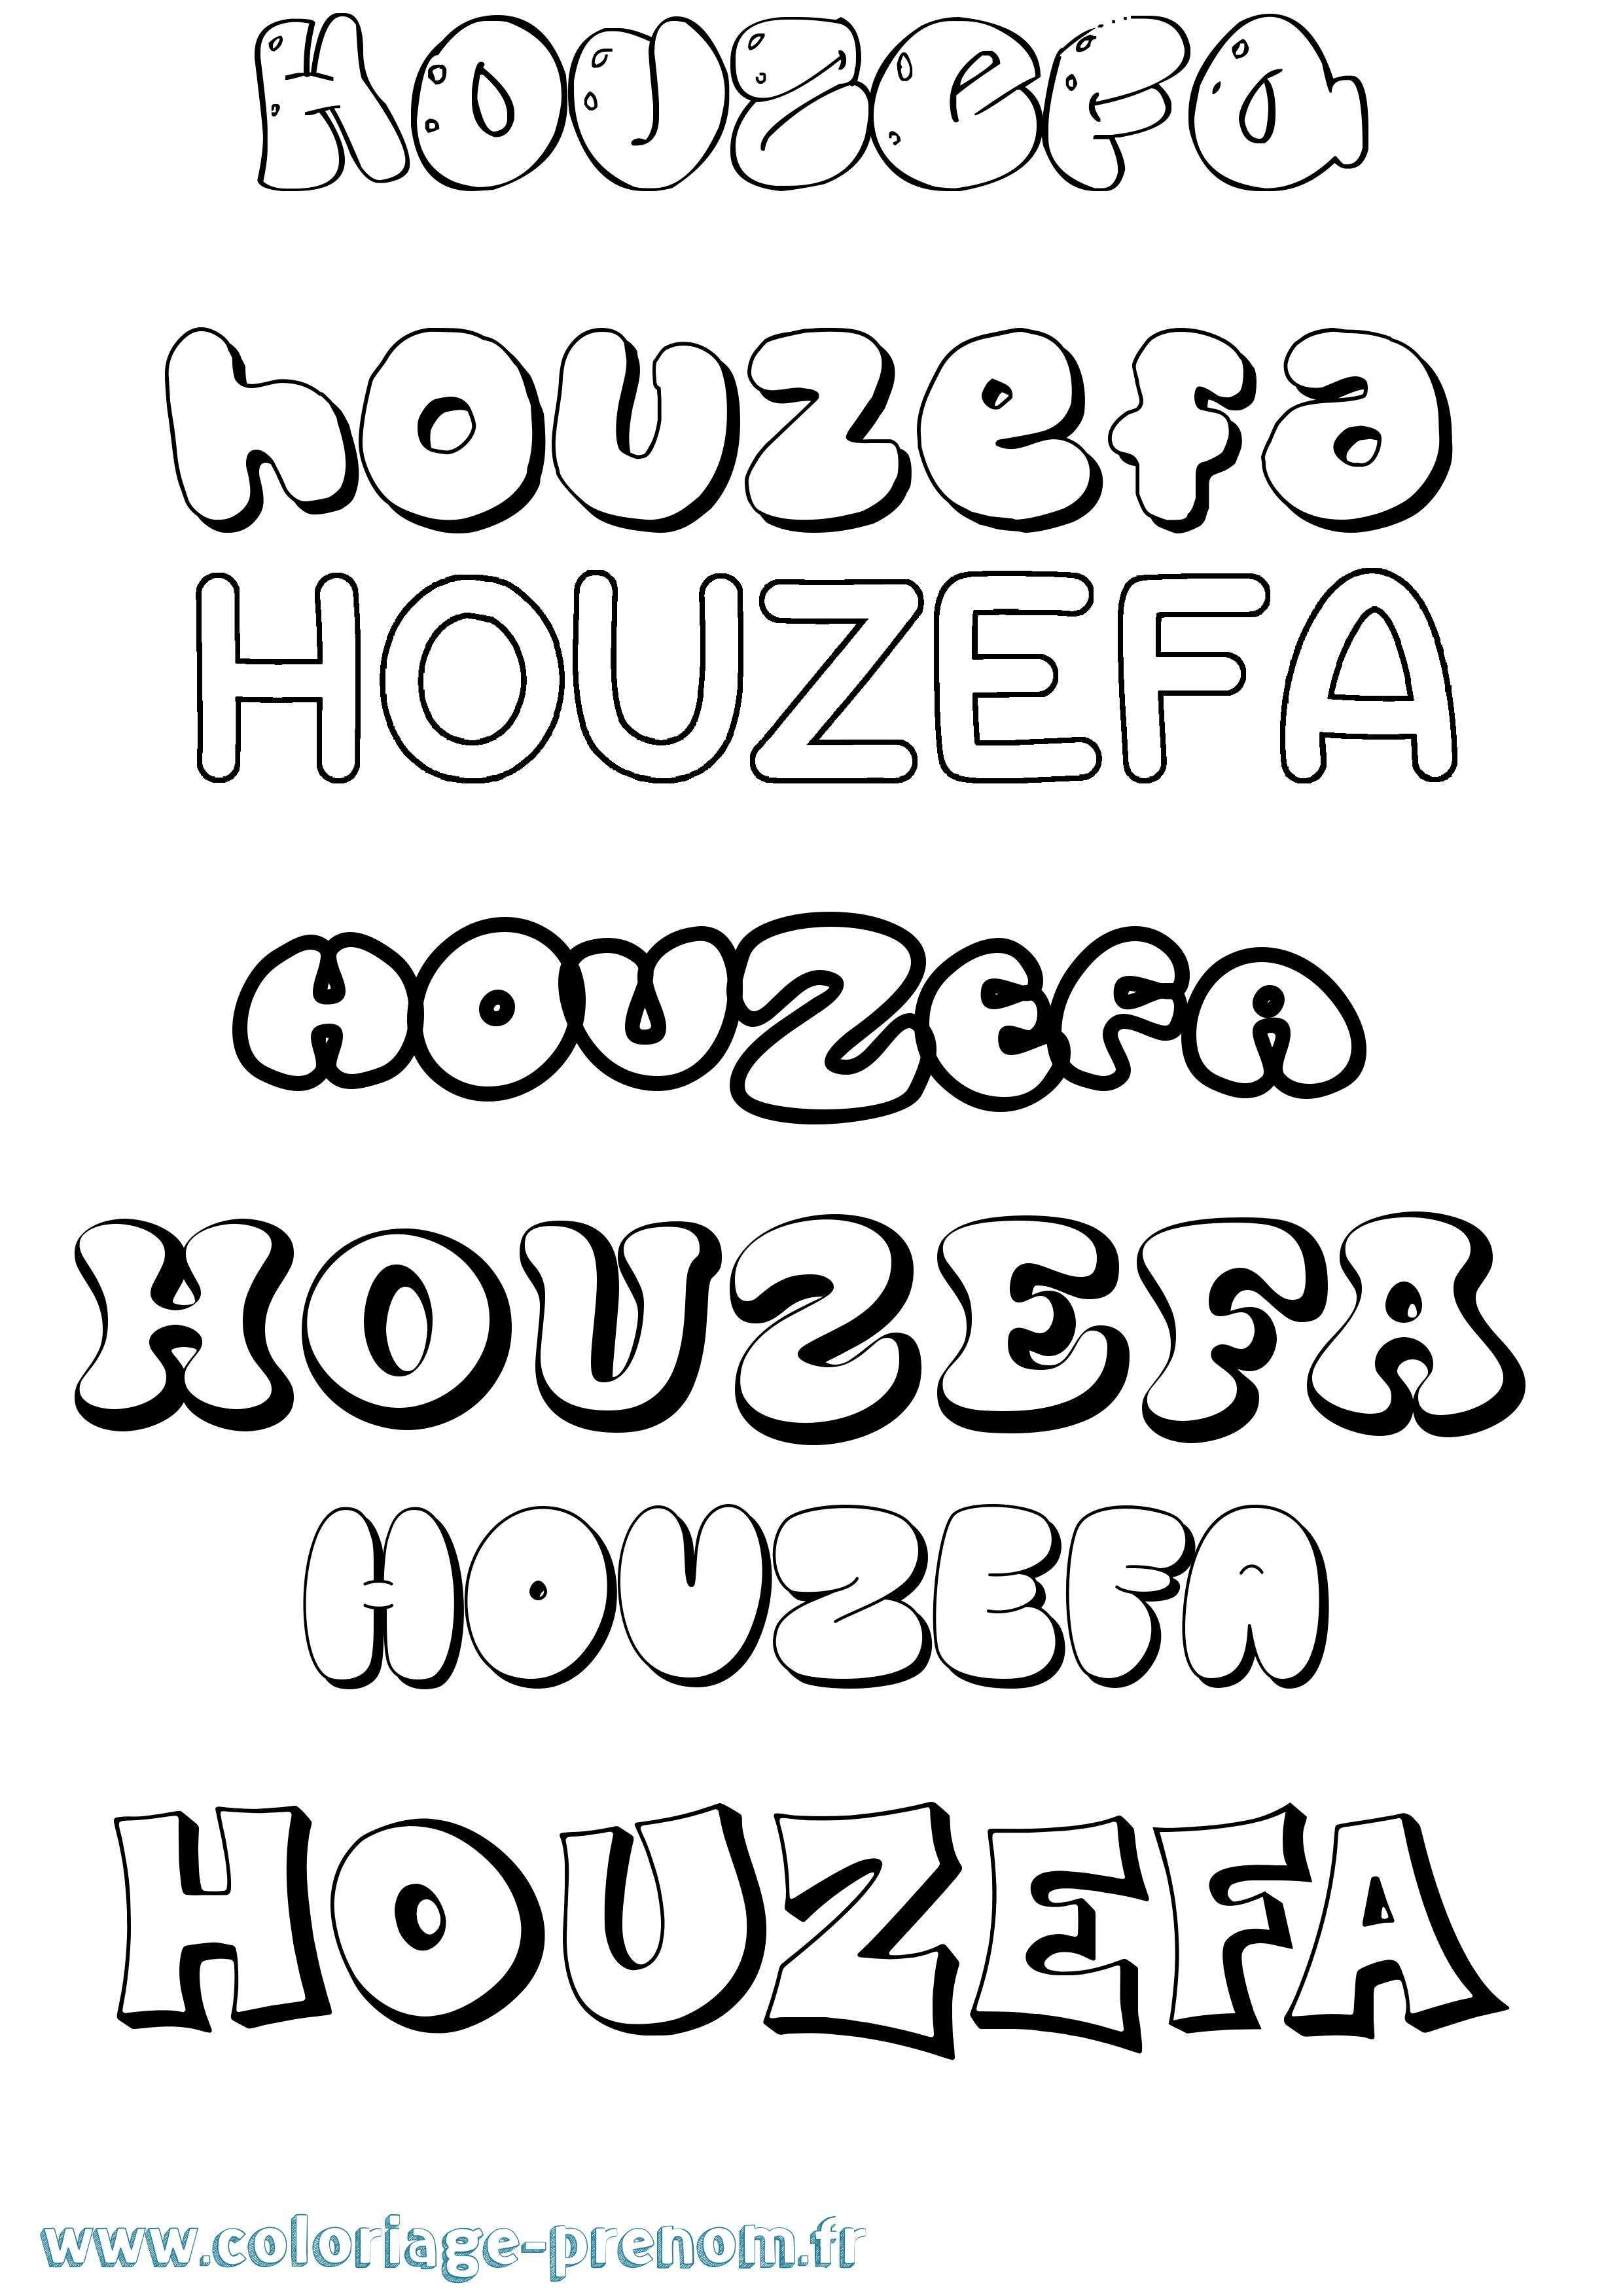 Coloriage prénom Houzefa Bubble